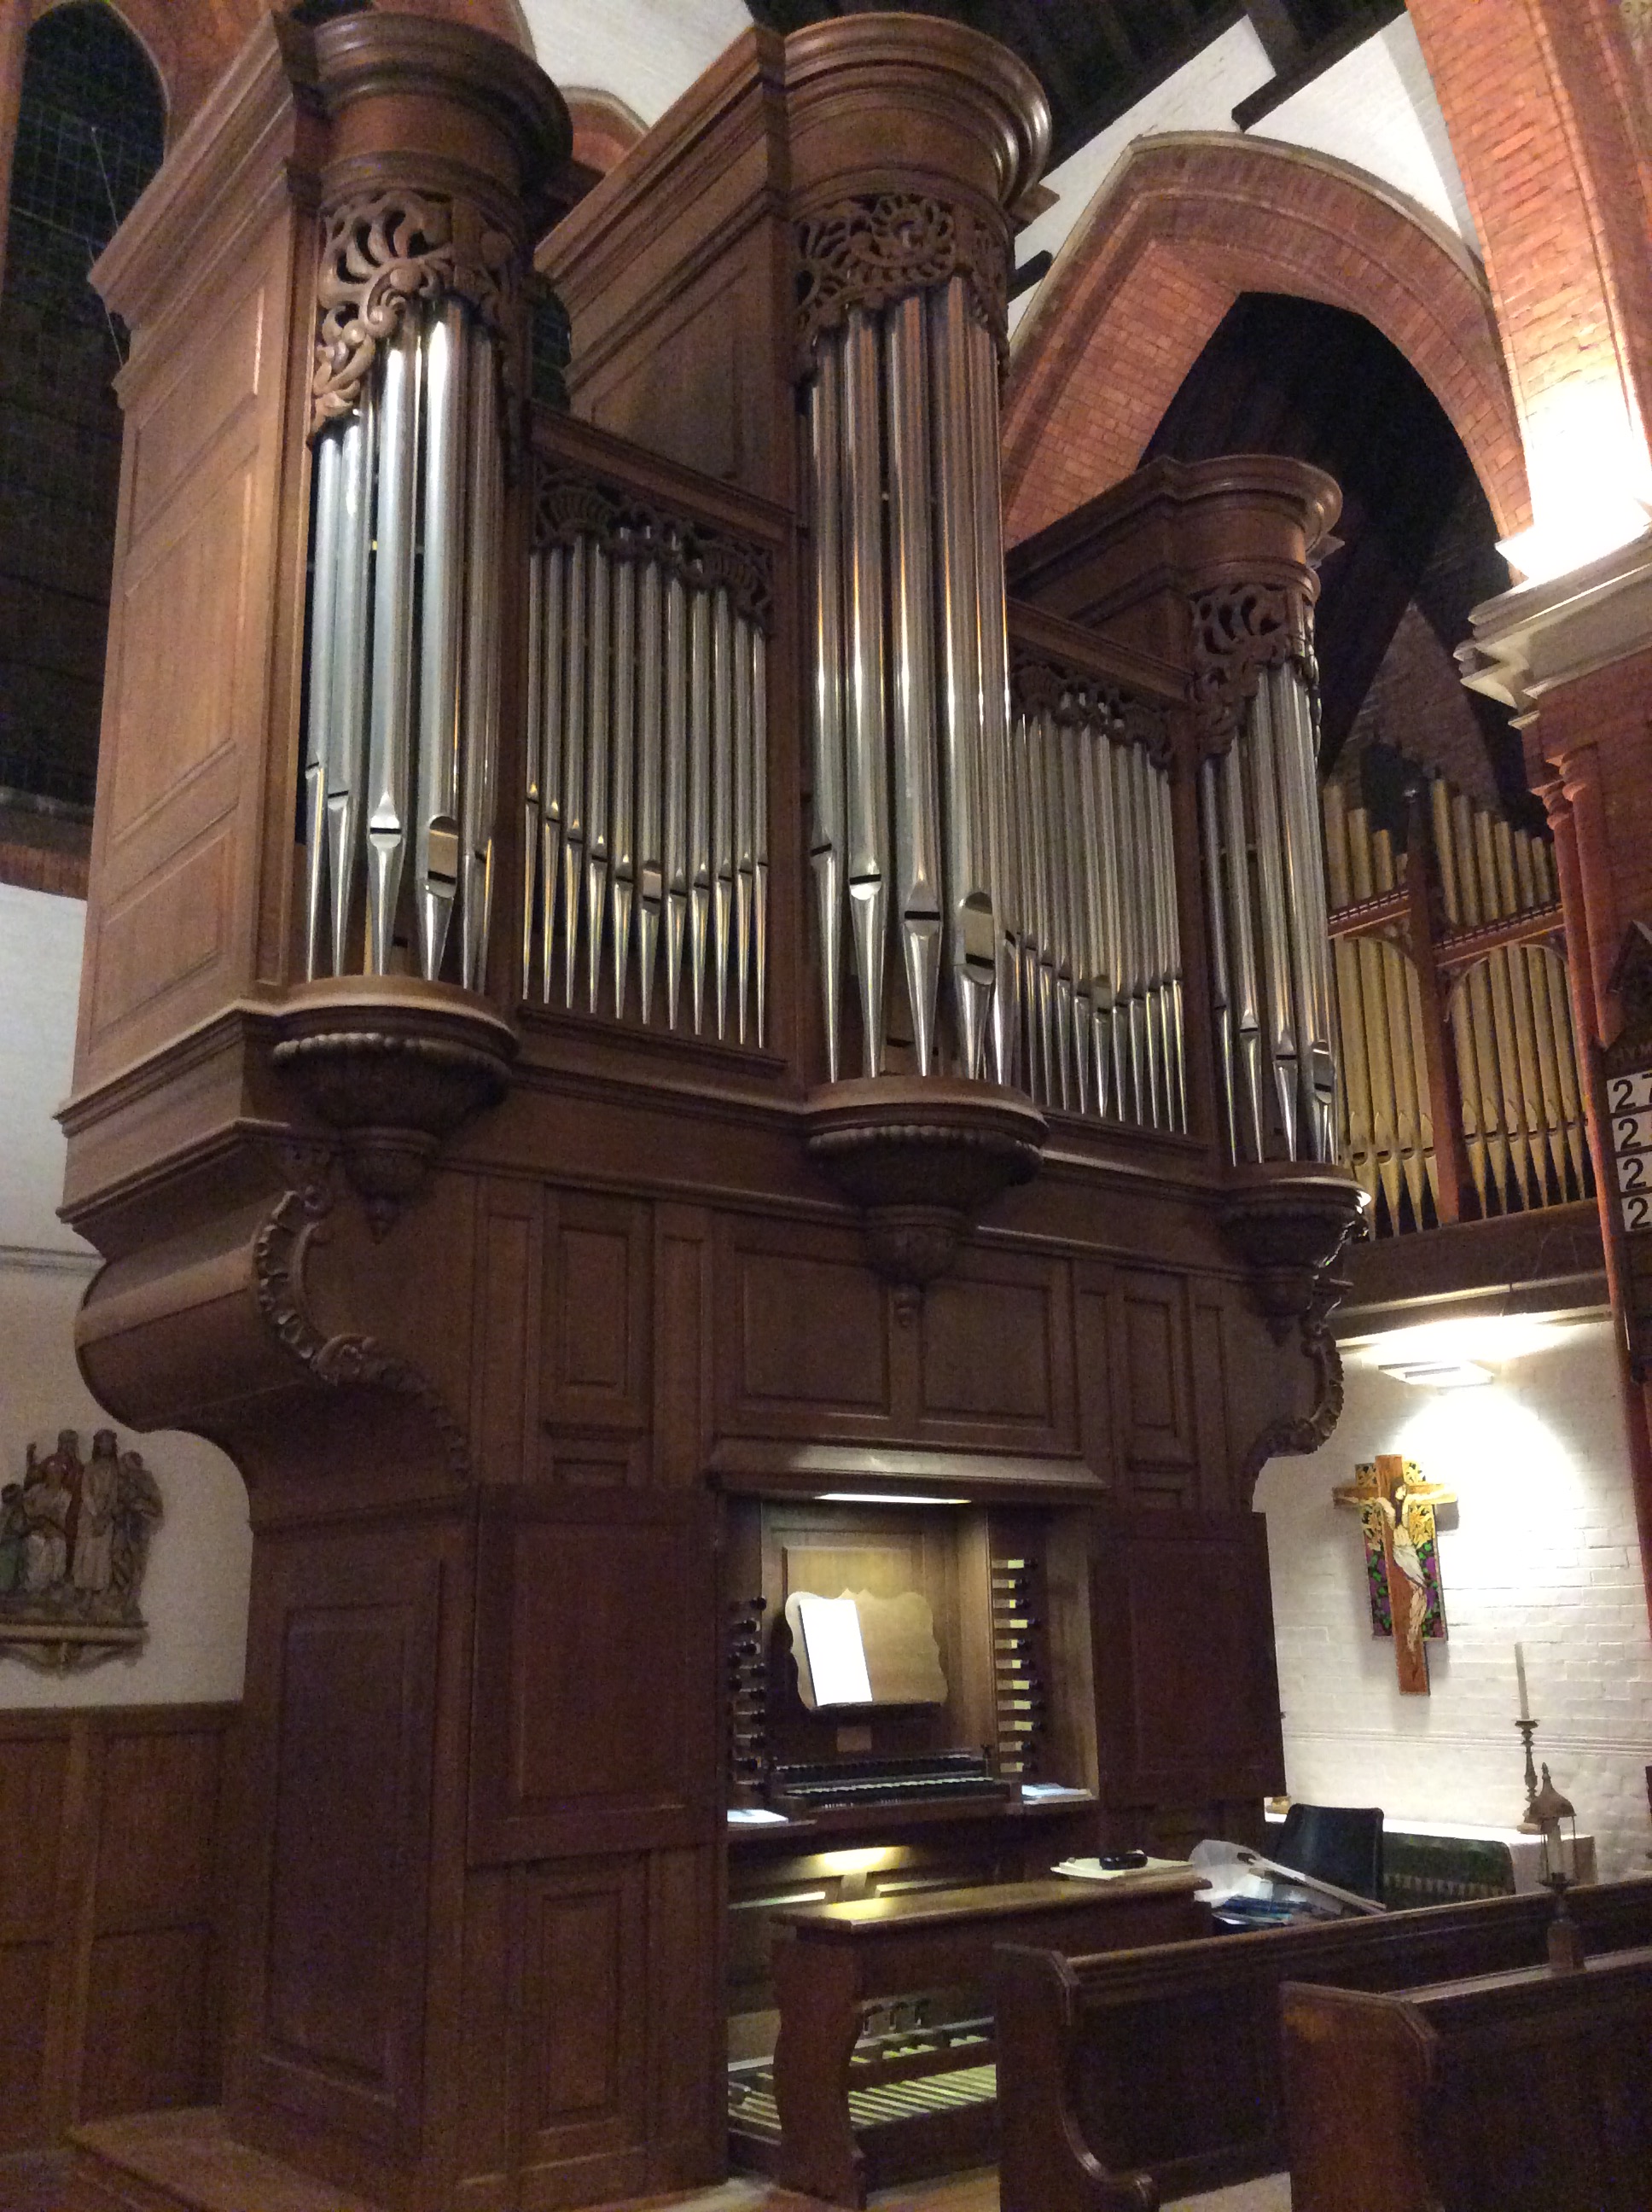 Image: The Peter Collins organ at St Saviour's